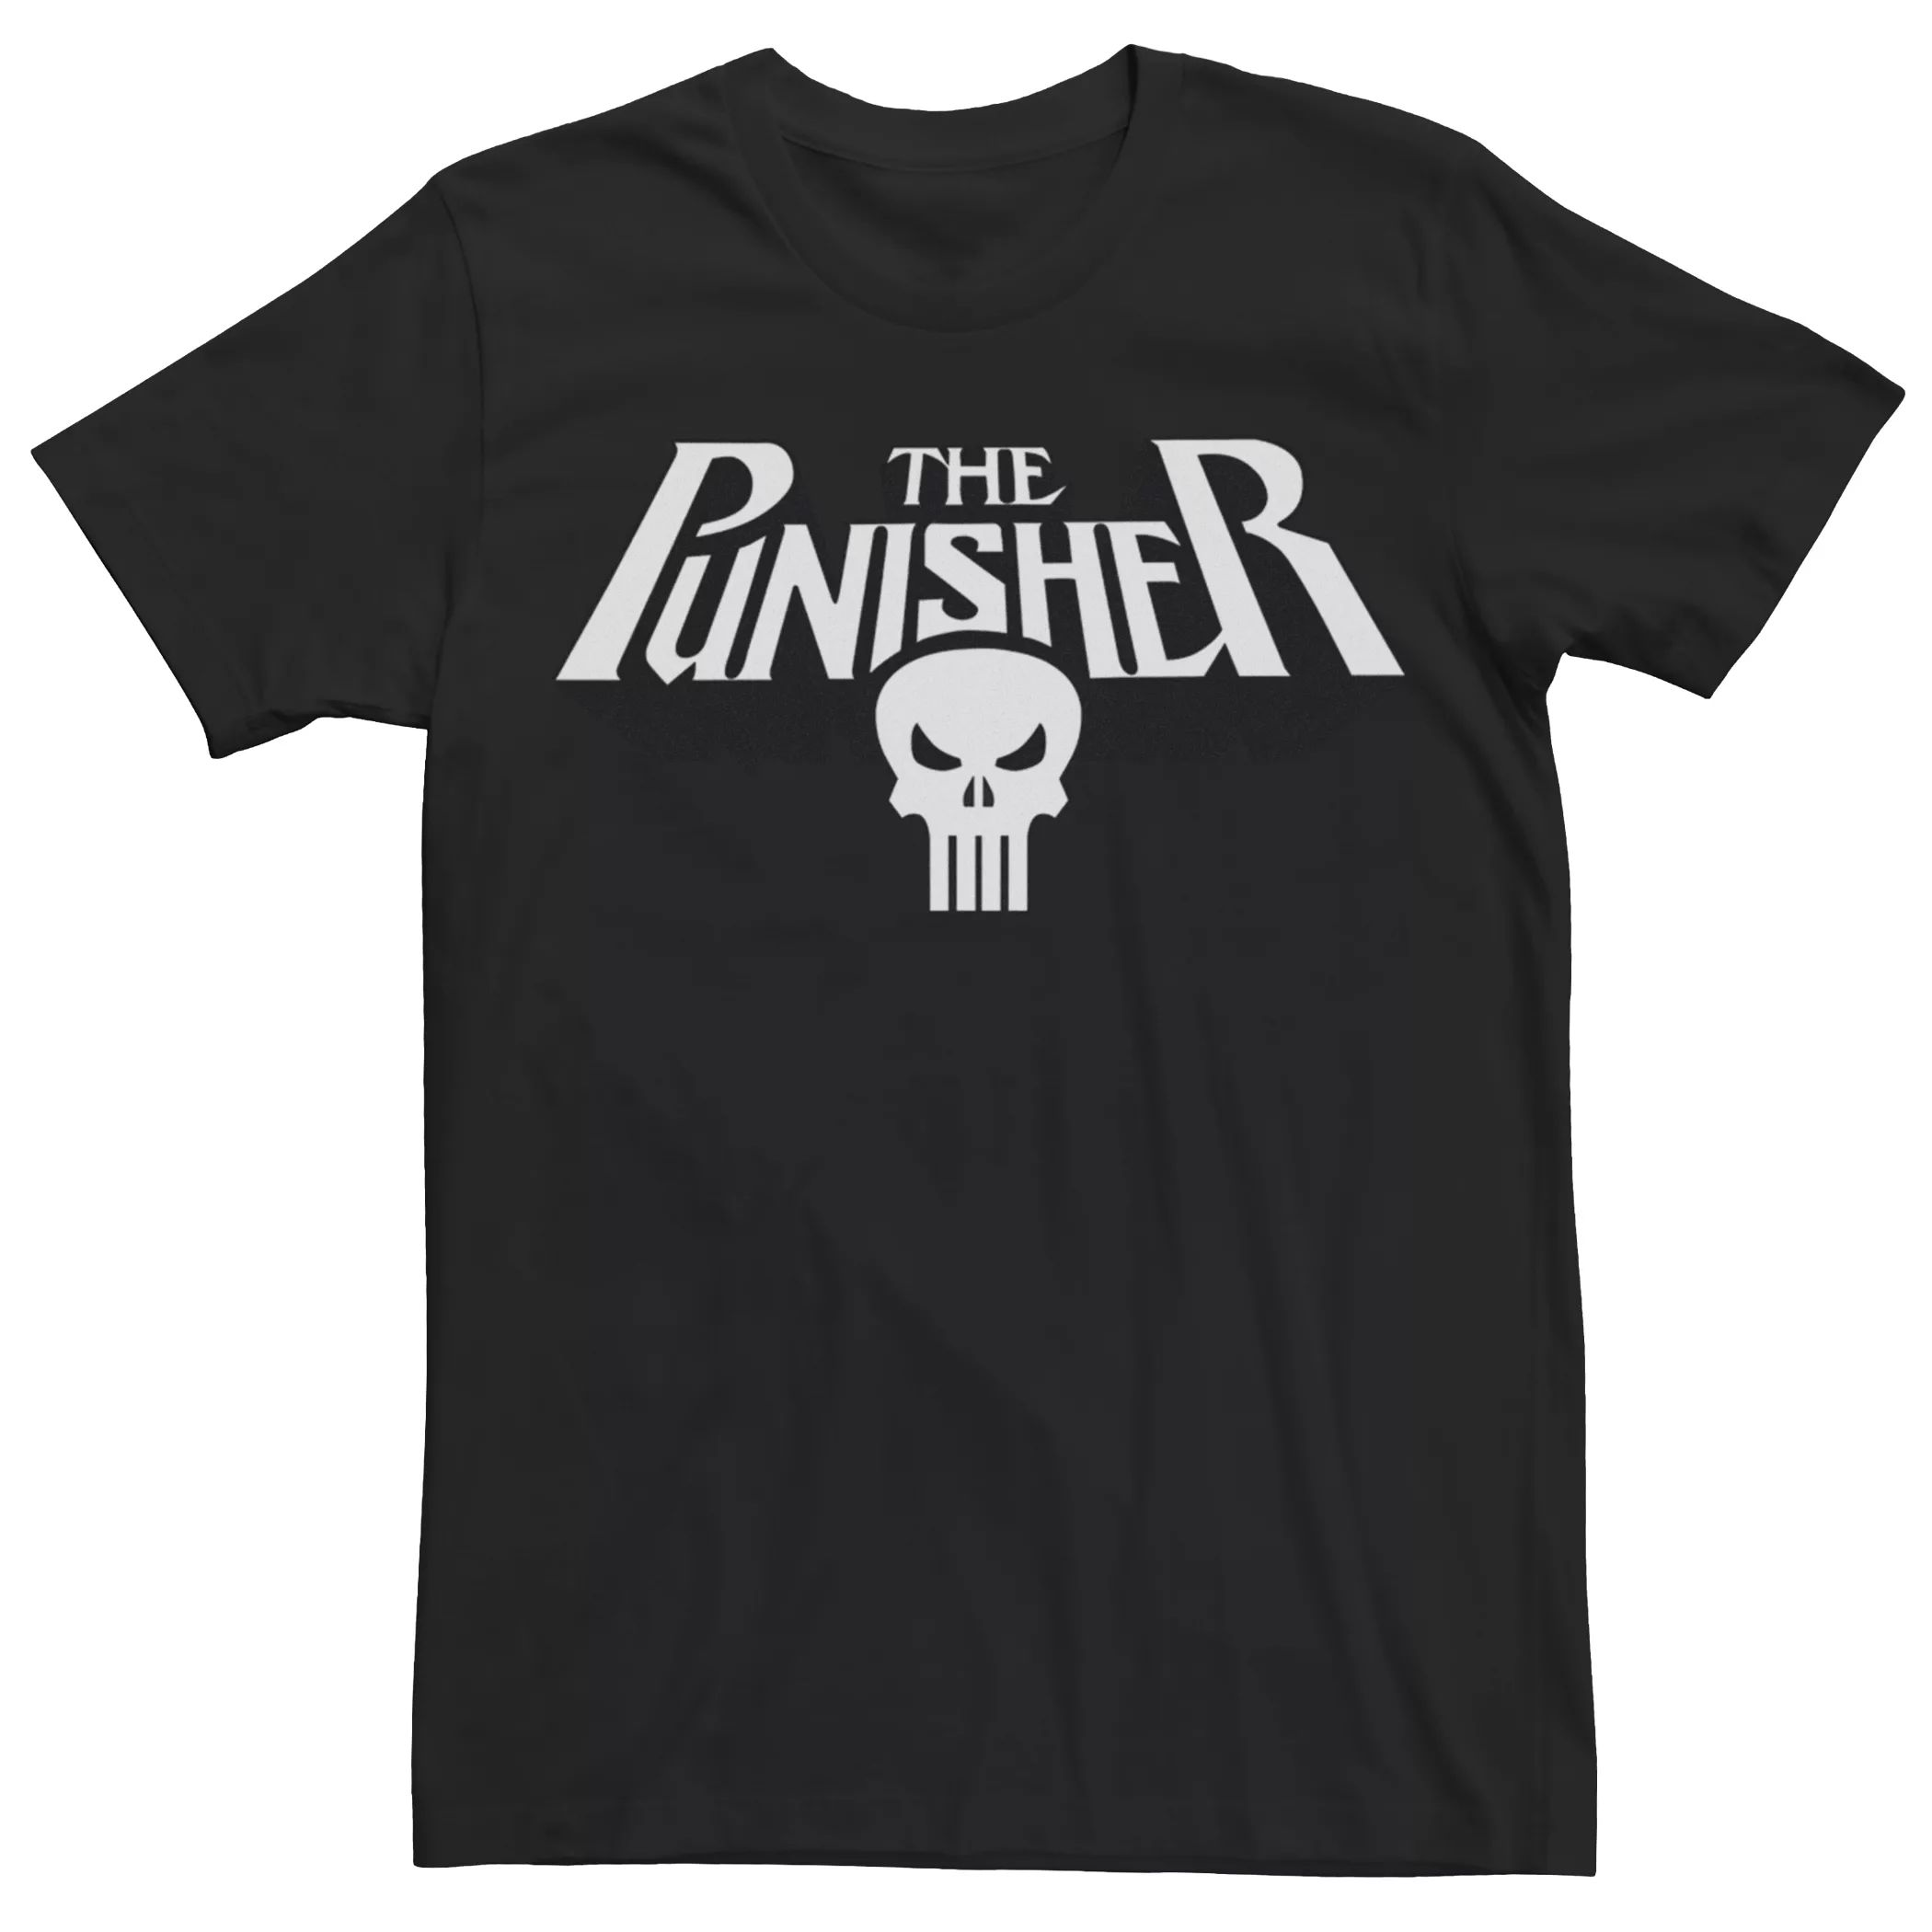 Мужская футболка с оригинальным логотипом Punisher и графическим рисунком Licensed Character